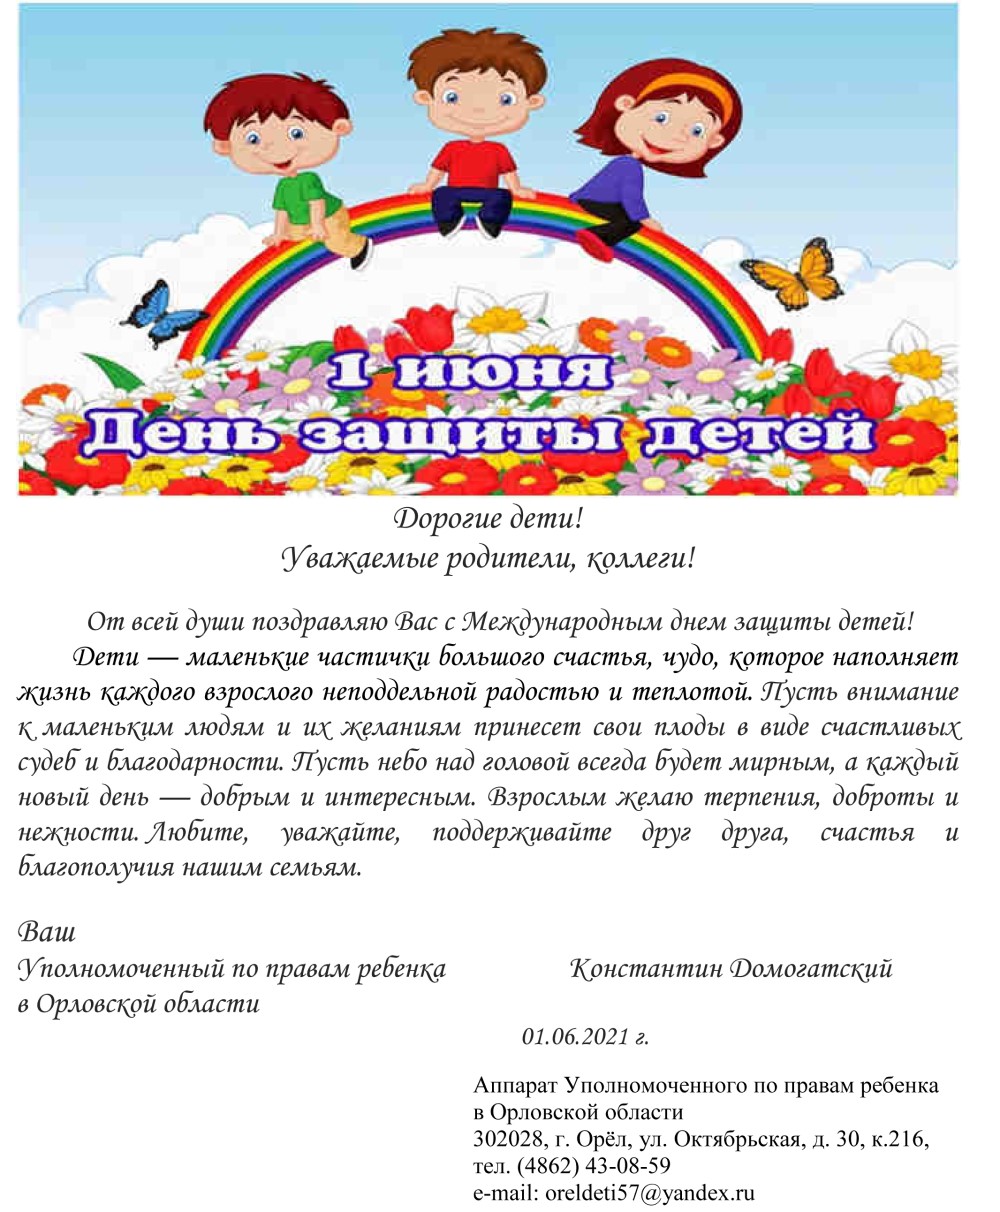 Поздравление Уполномоченного по правам ребенка в Орловской области К.И. Домогатского